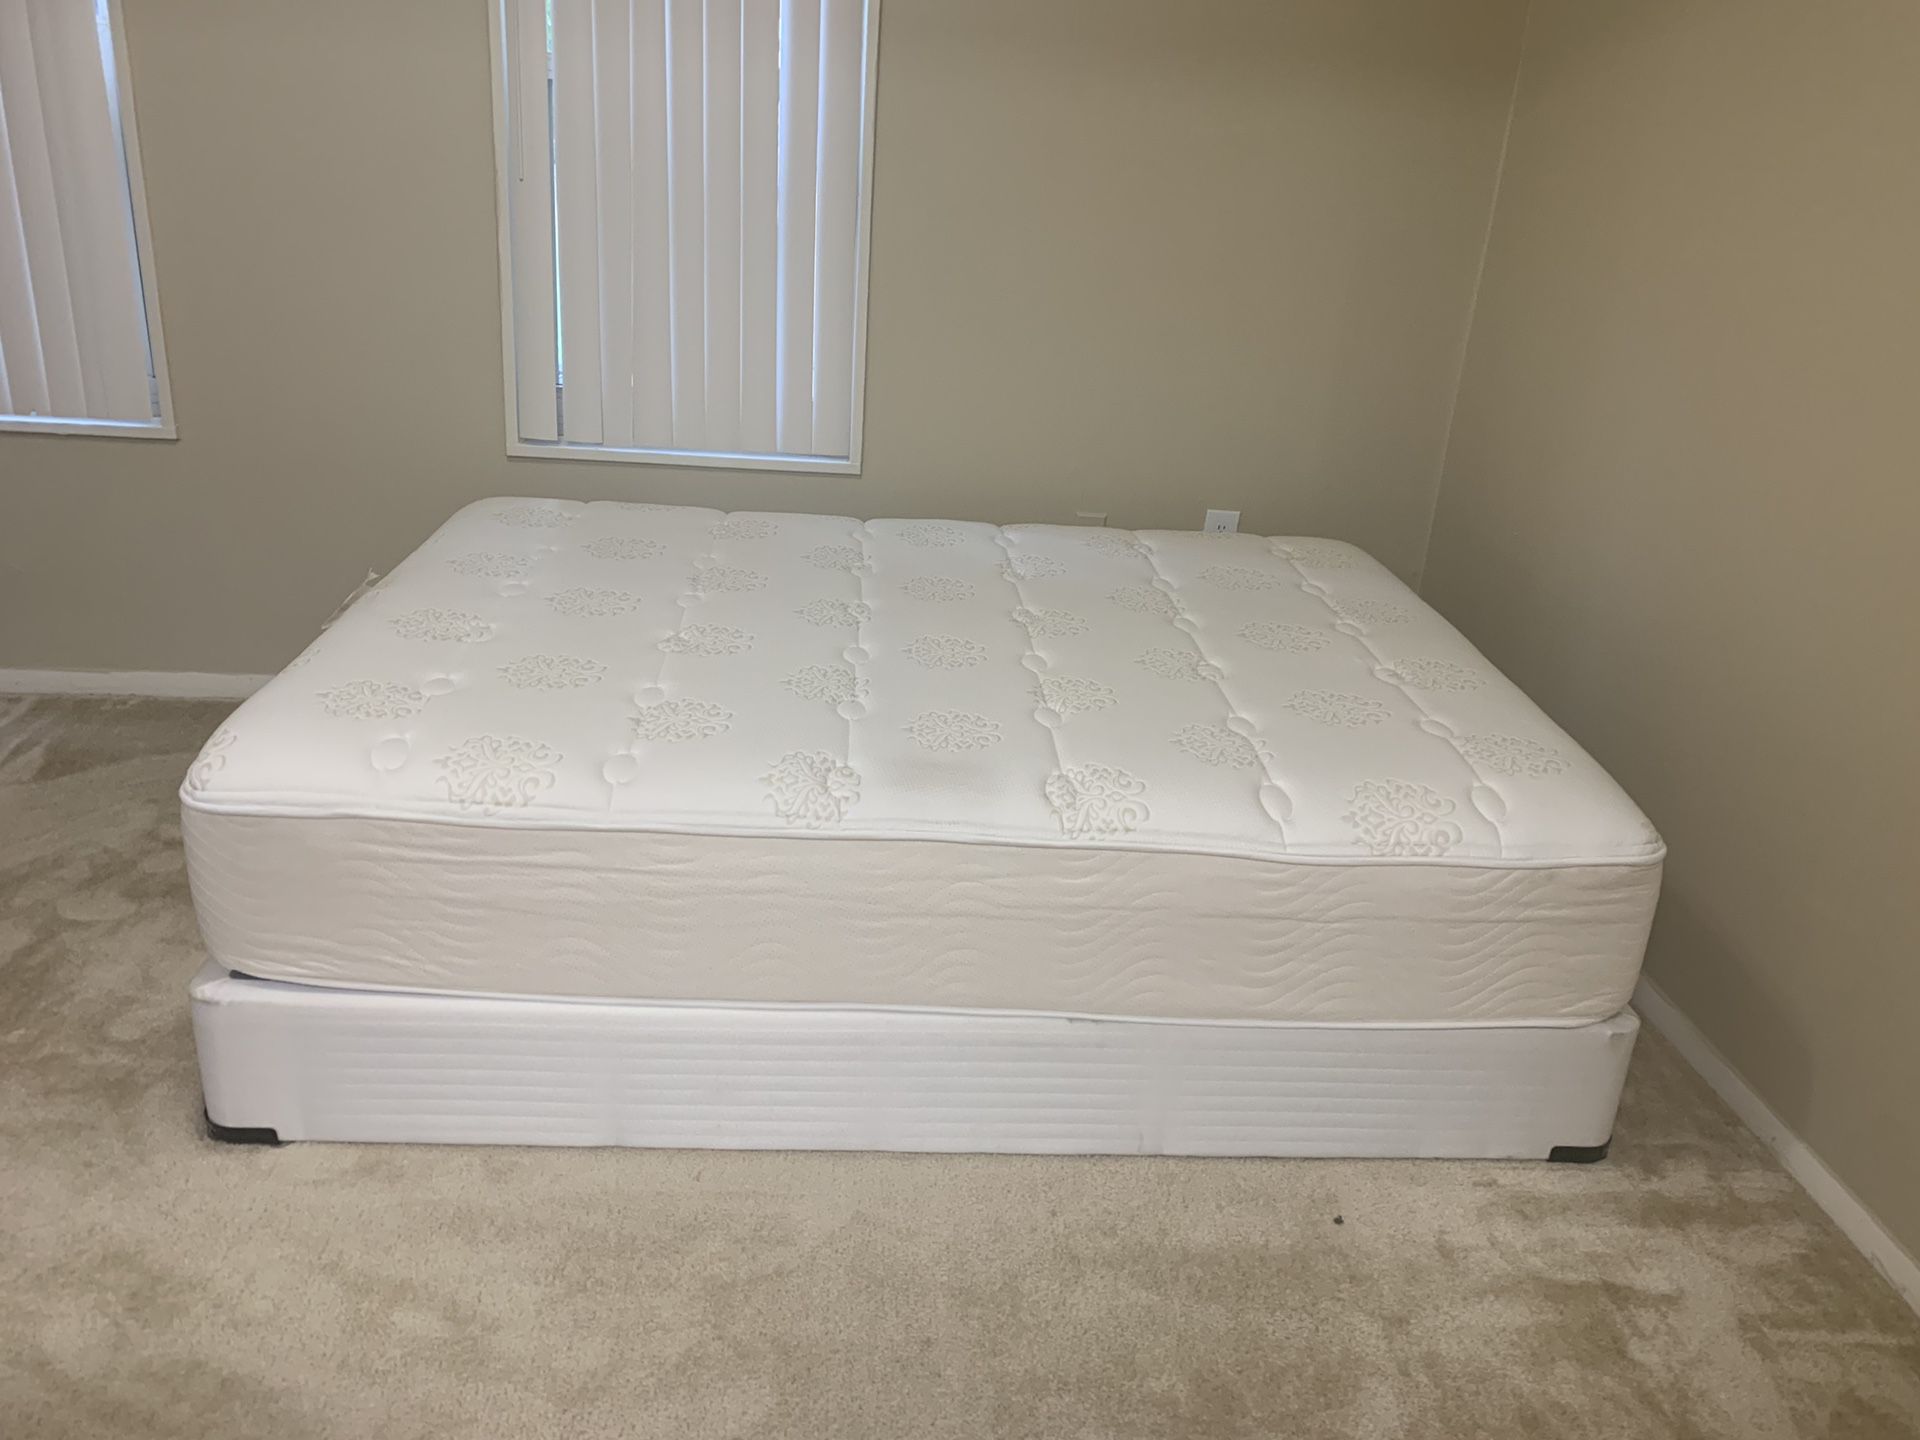 Queen bed mattress + box spring